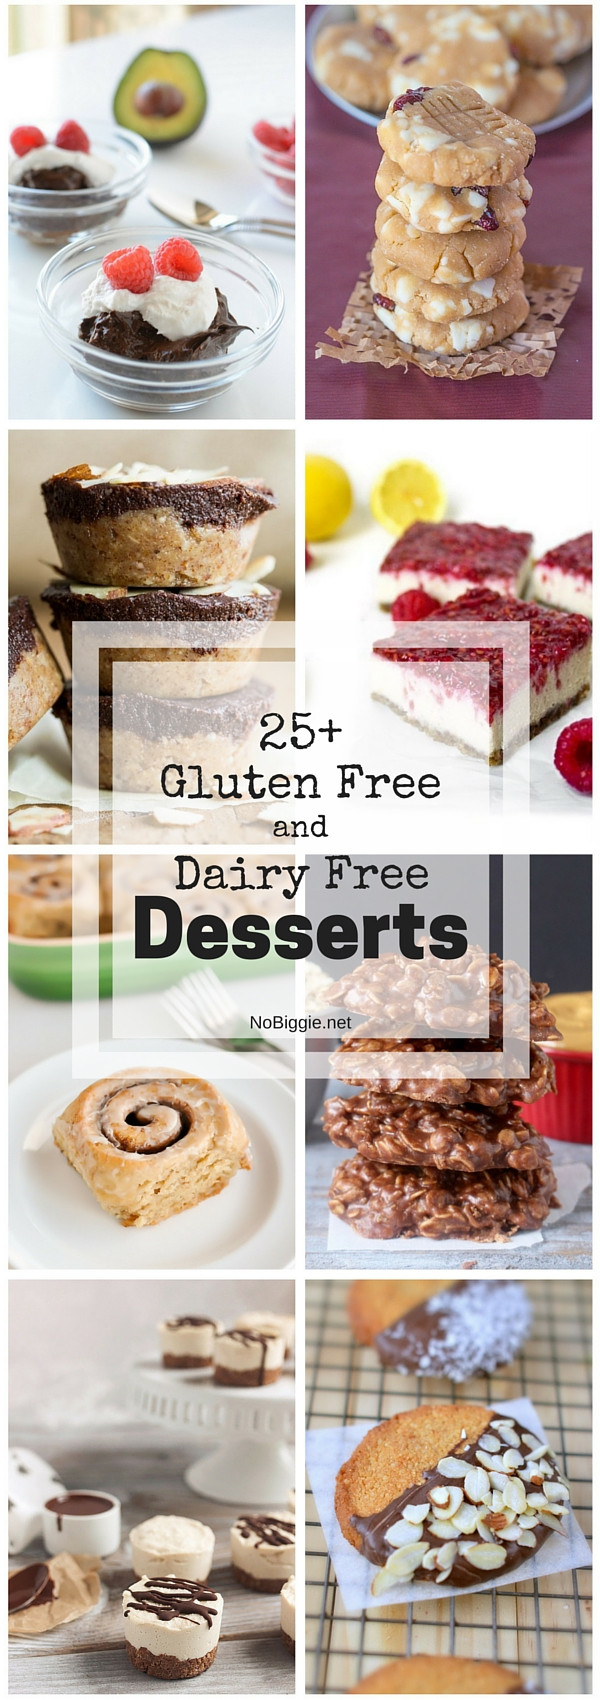 Vegan And Gluten Free Desserts
 25 Gluten Free and Dairy Free Desserts